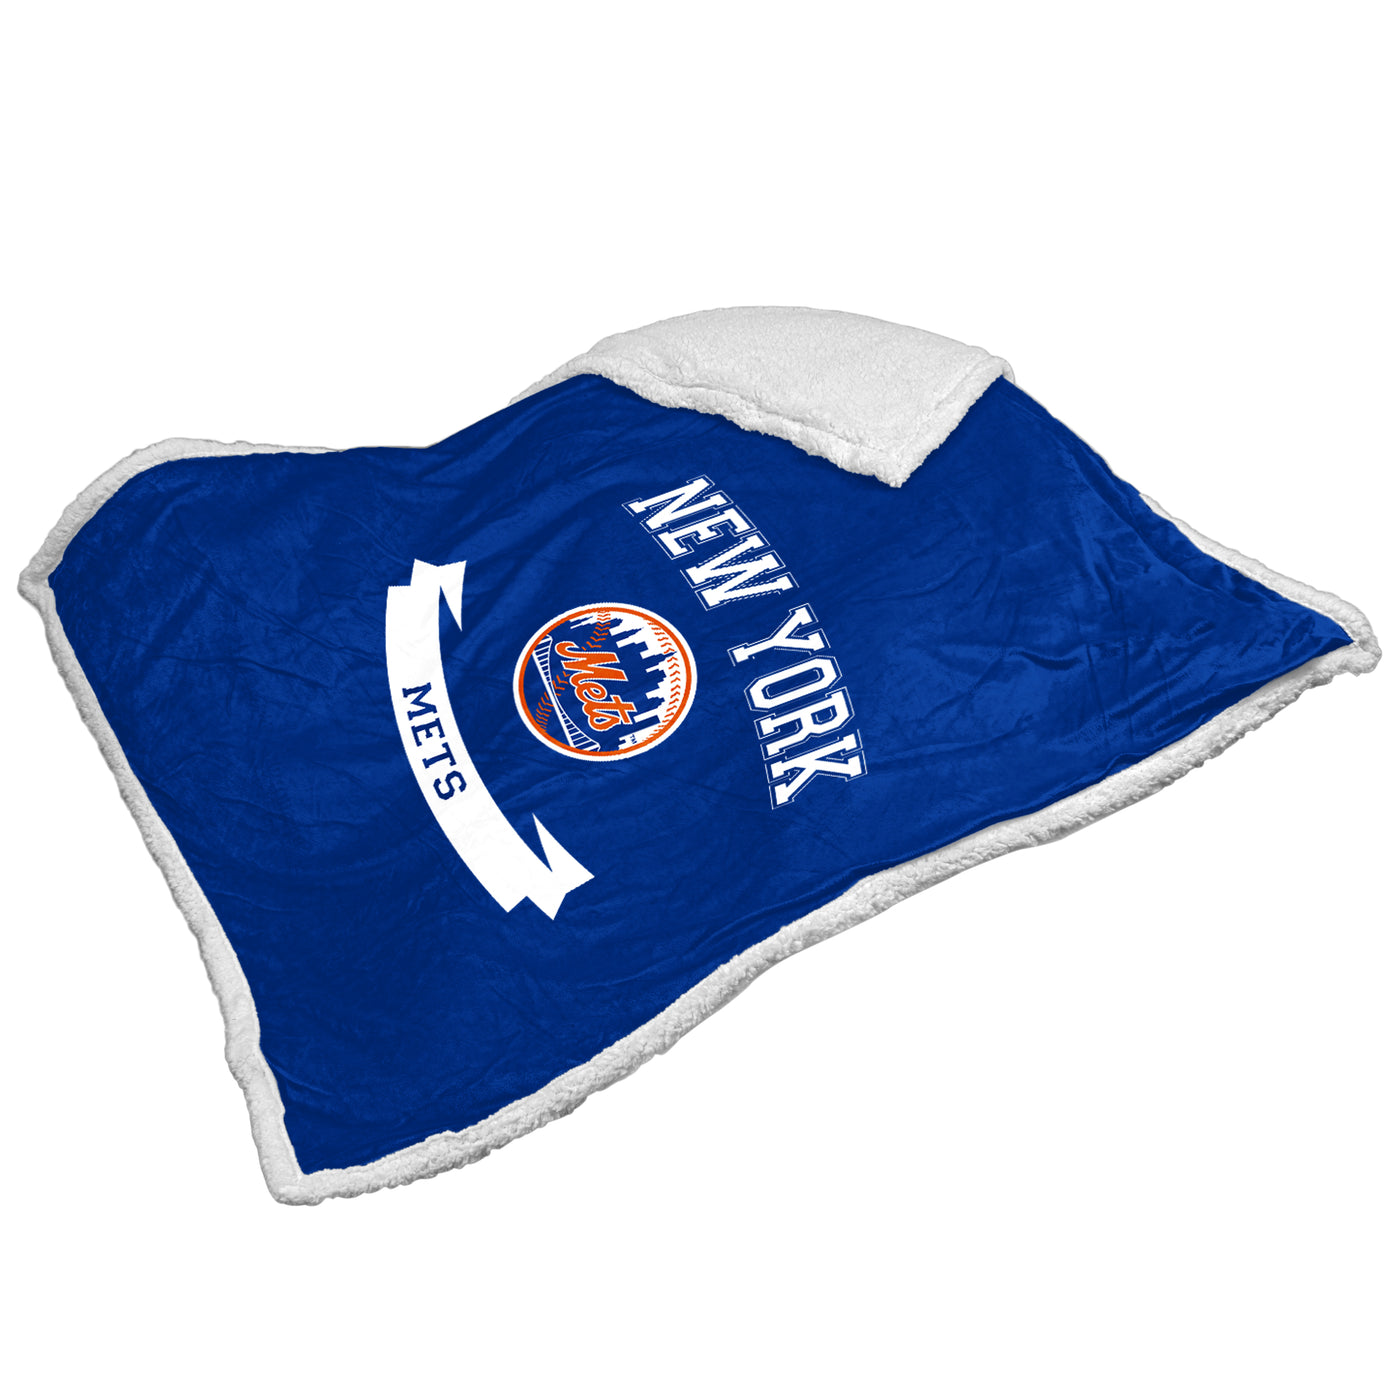 New York Mets Printed Sherpa Blanket